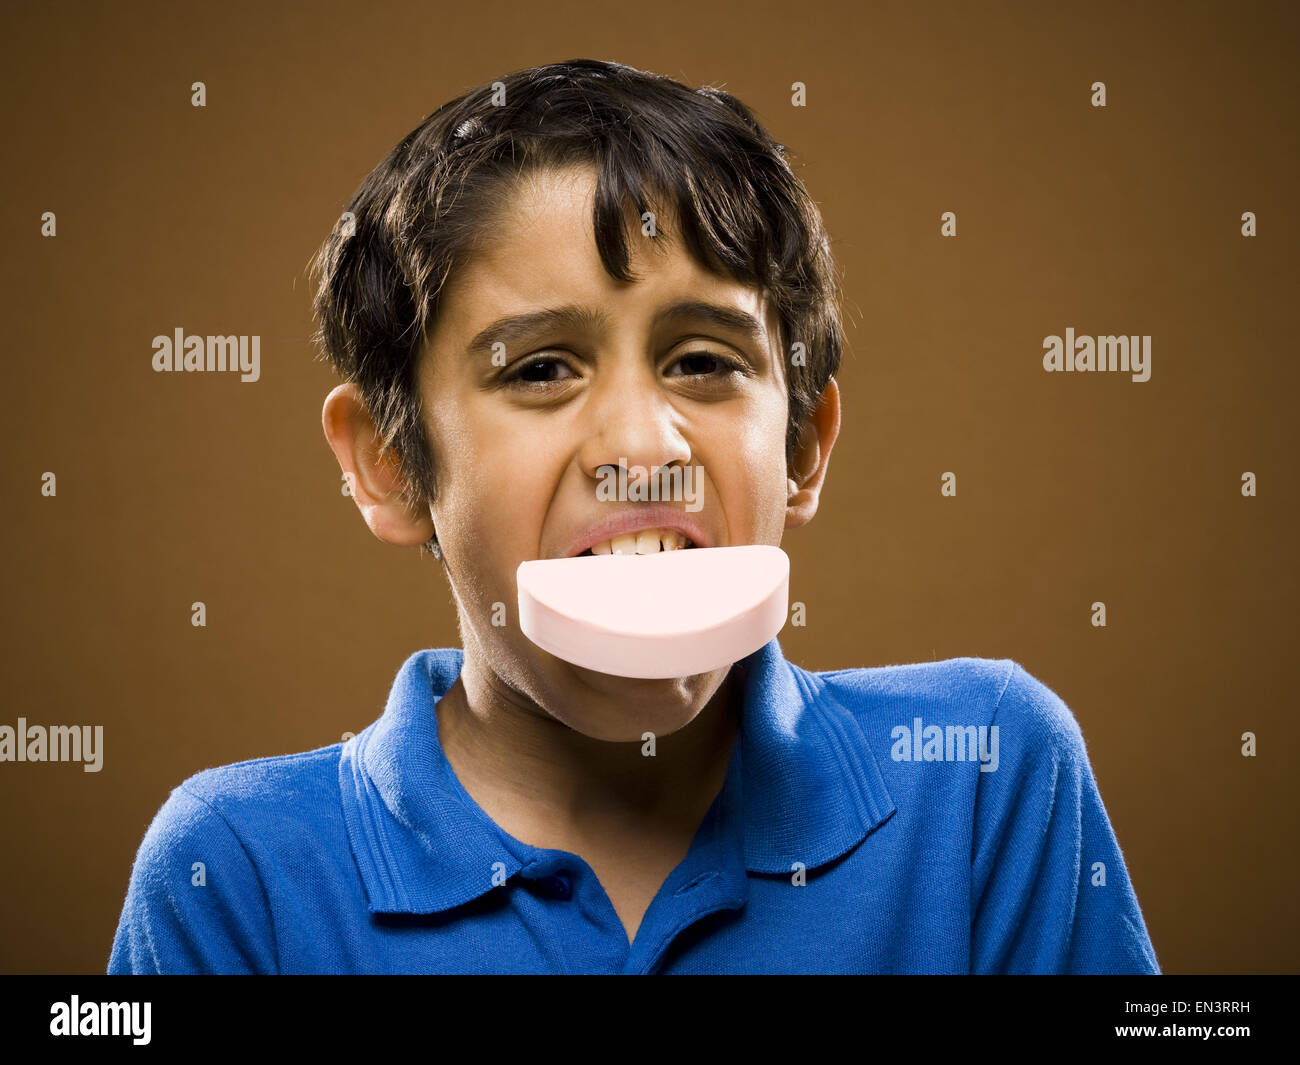 Chico con barra de jabón en la boca Fotografía de stock - Alamy